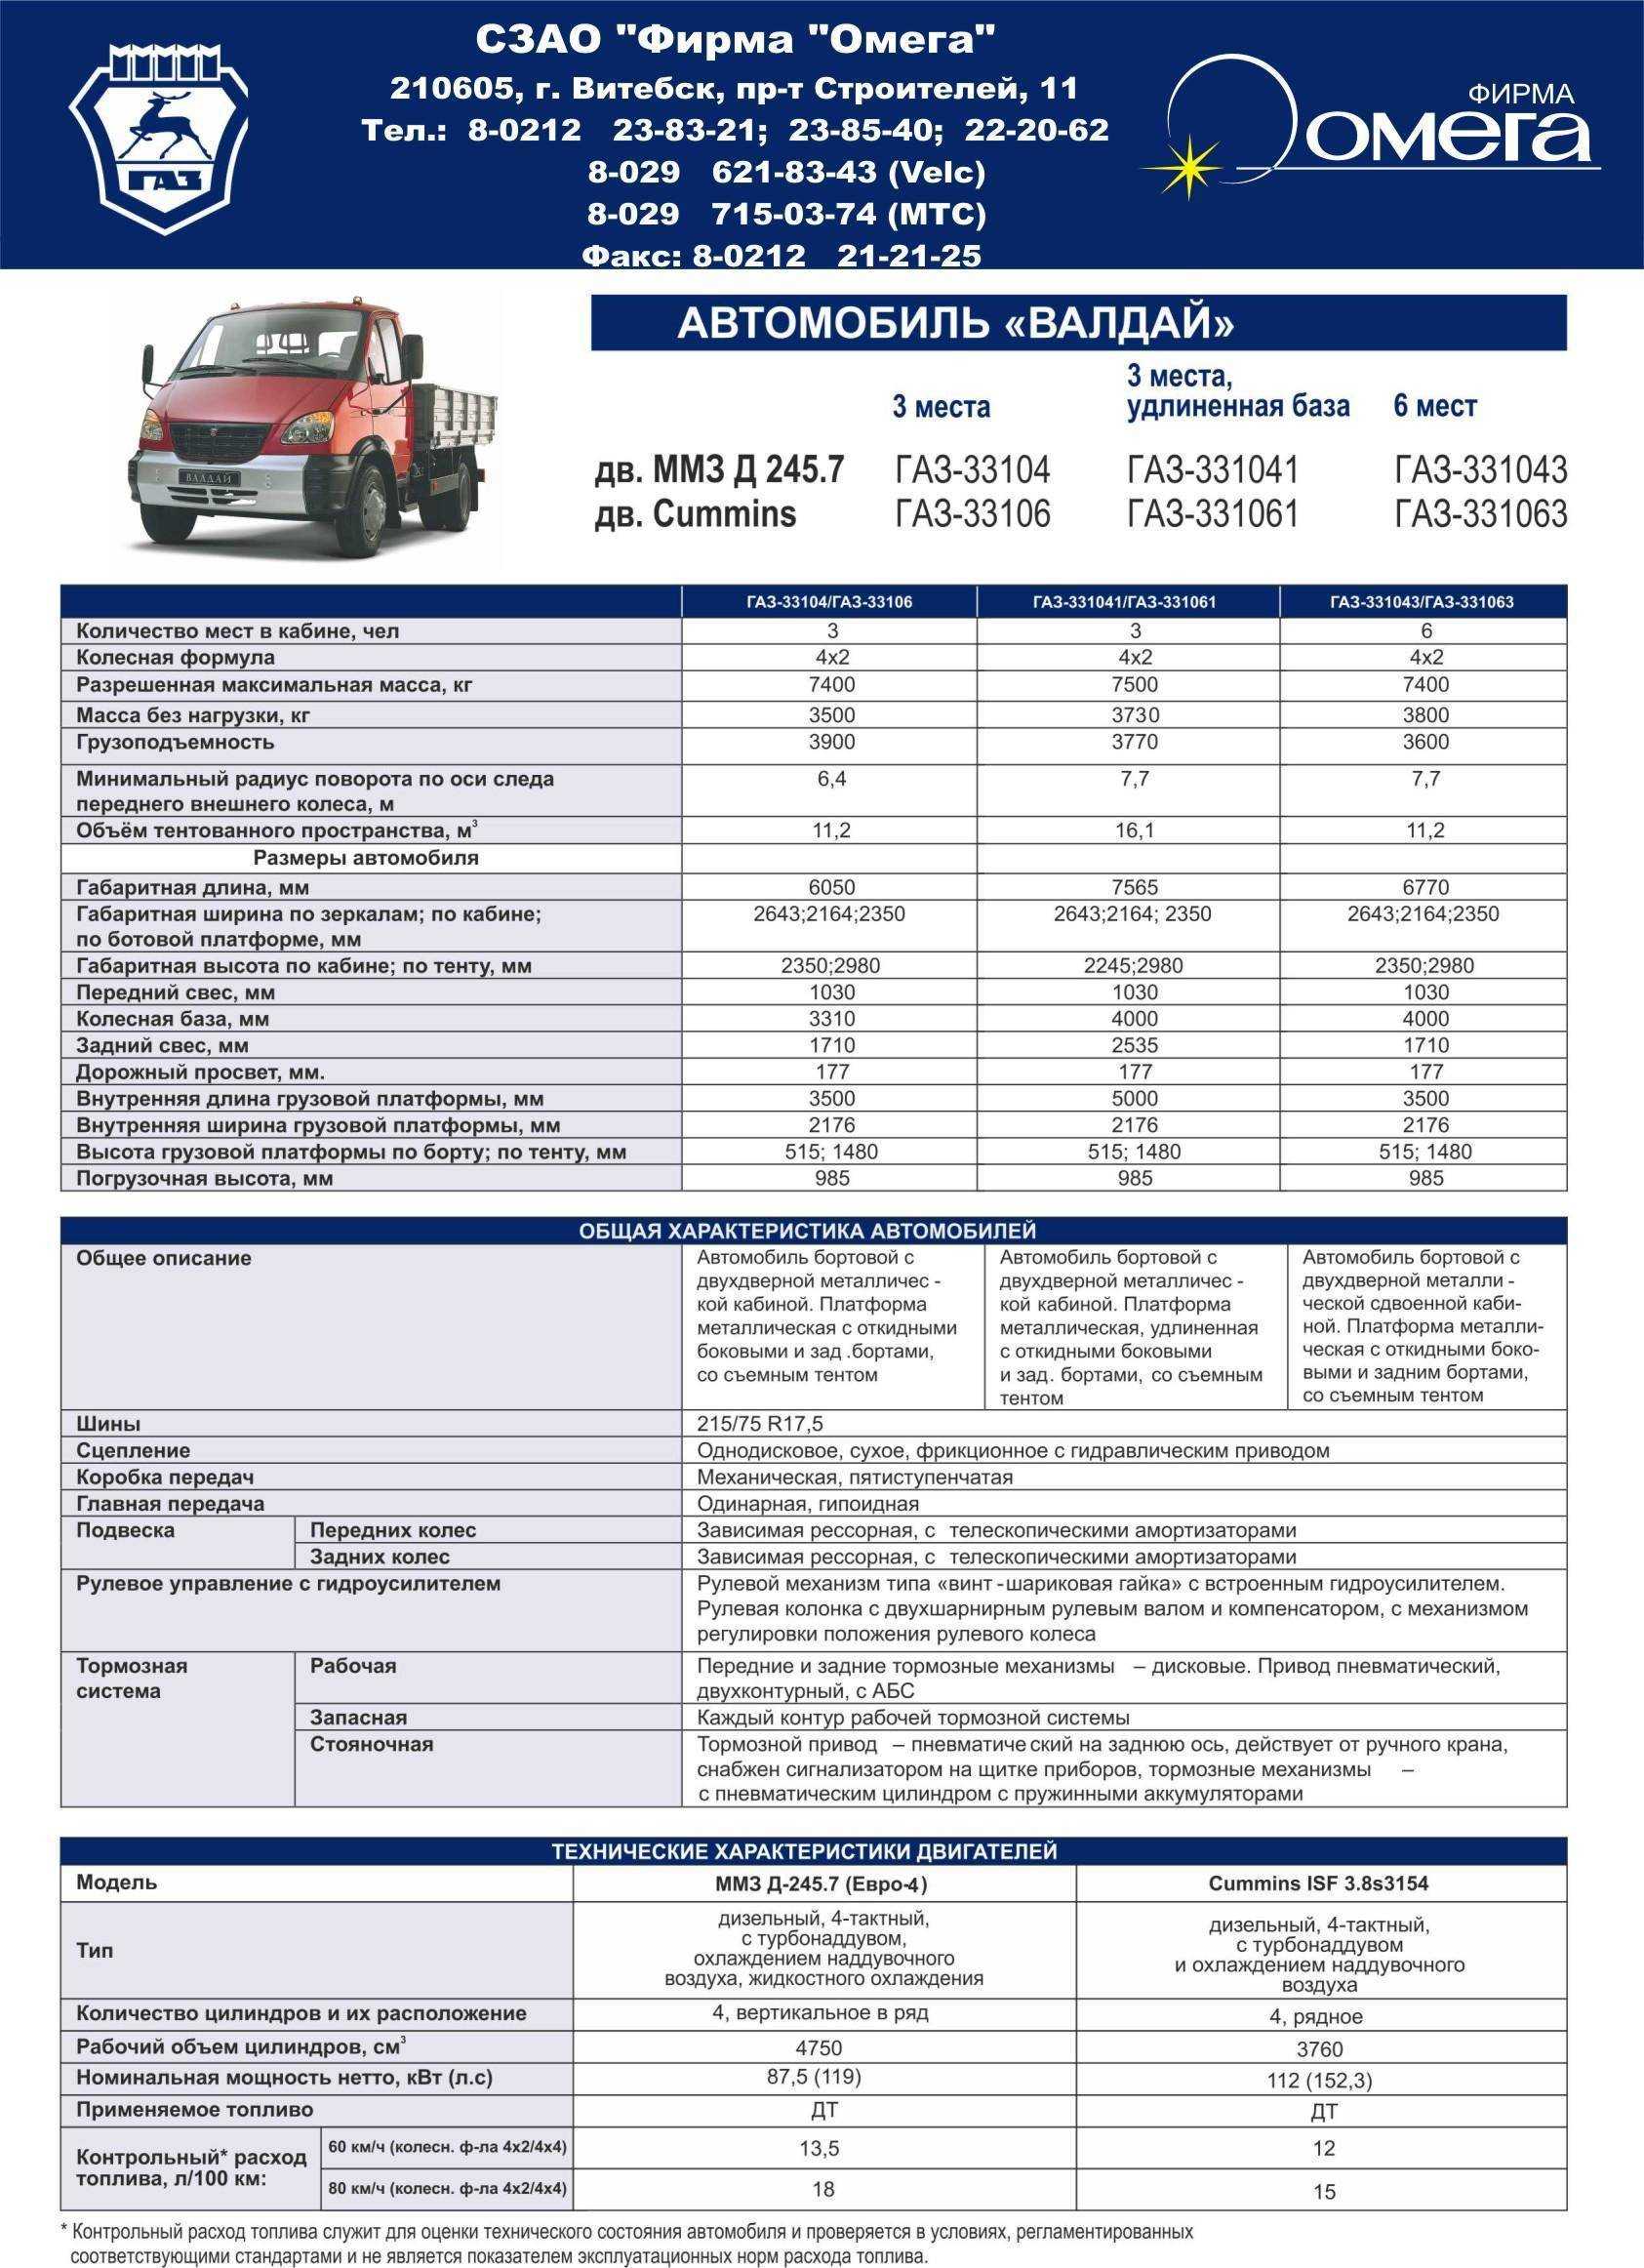 Обзор и технические характеристики автомобиля газ-33106 валдай